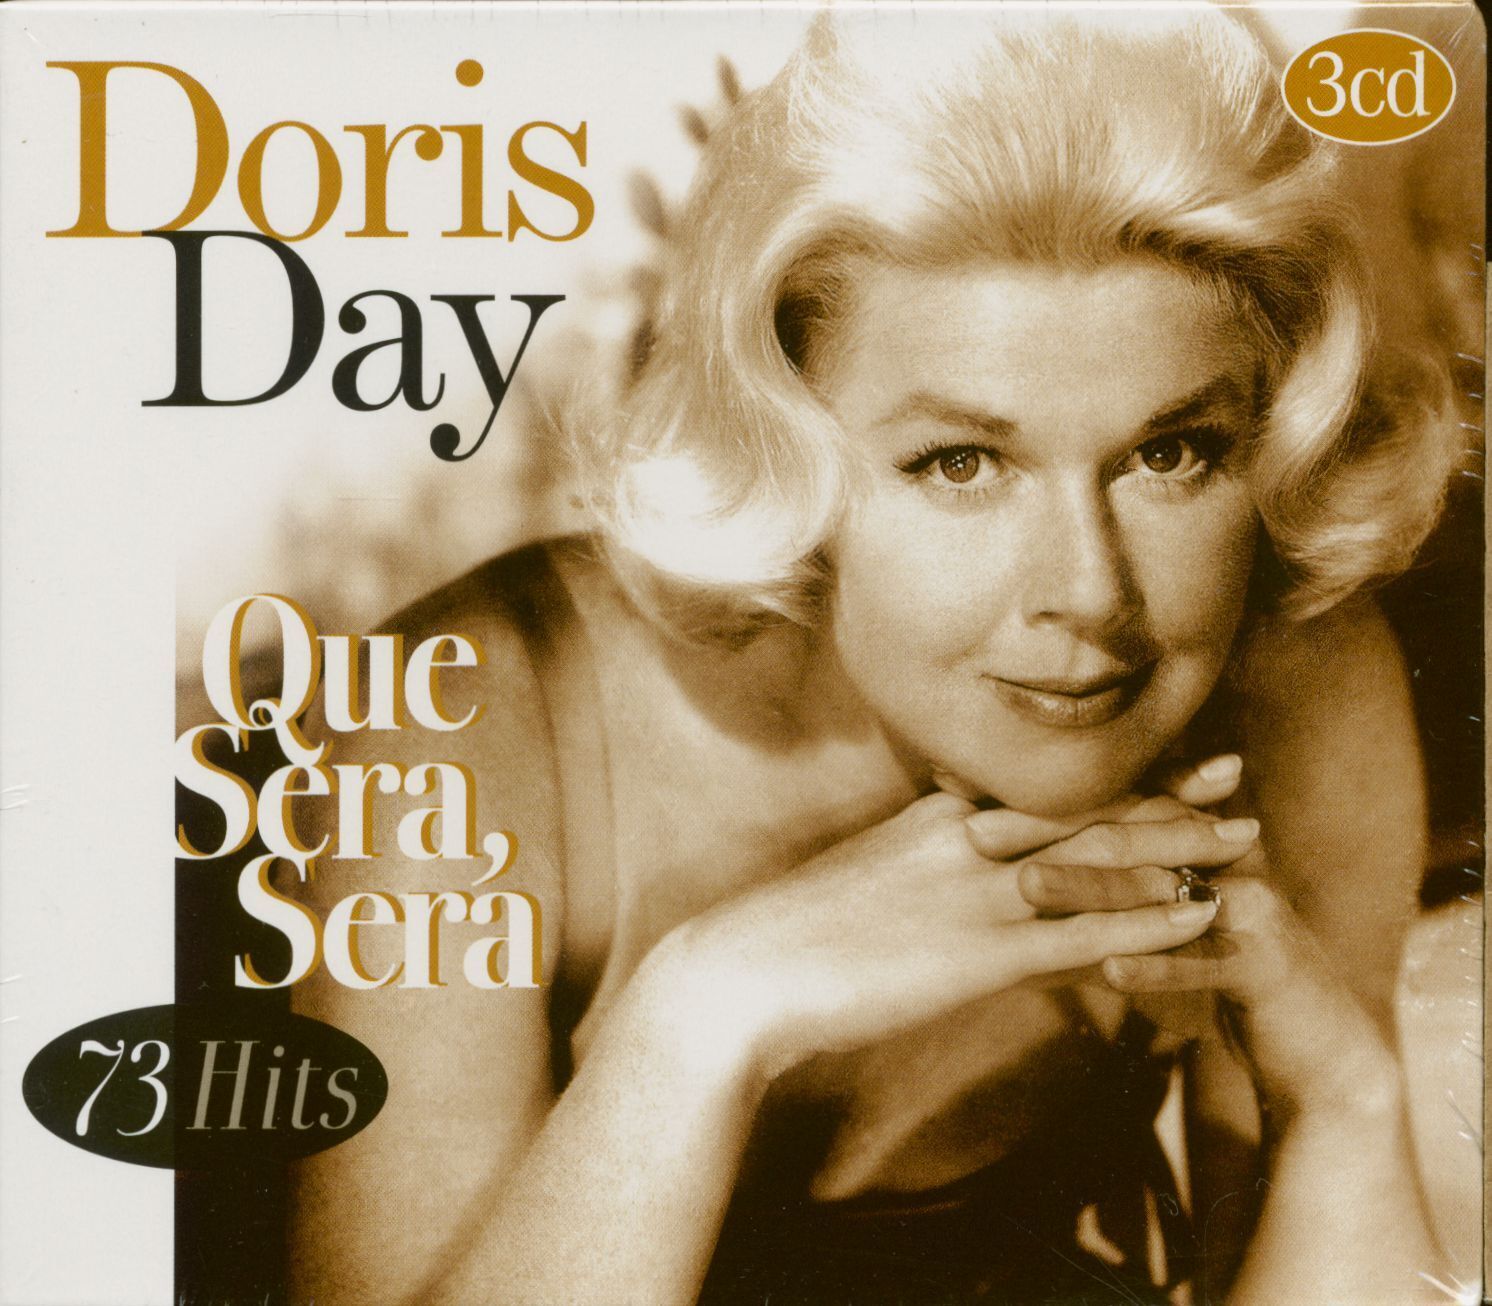 Doris Day - Que Sera Sera (3-CD) - Pop Vocal | eBay